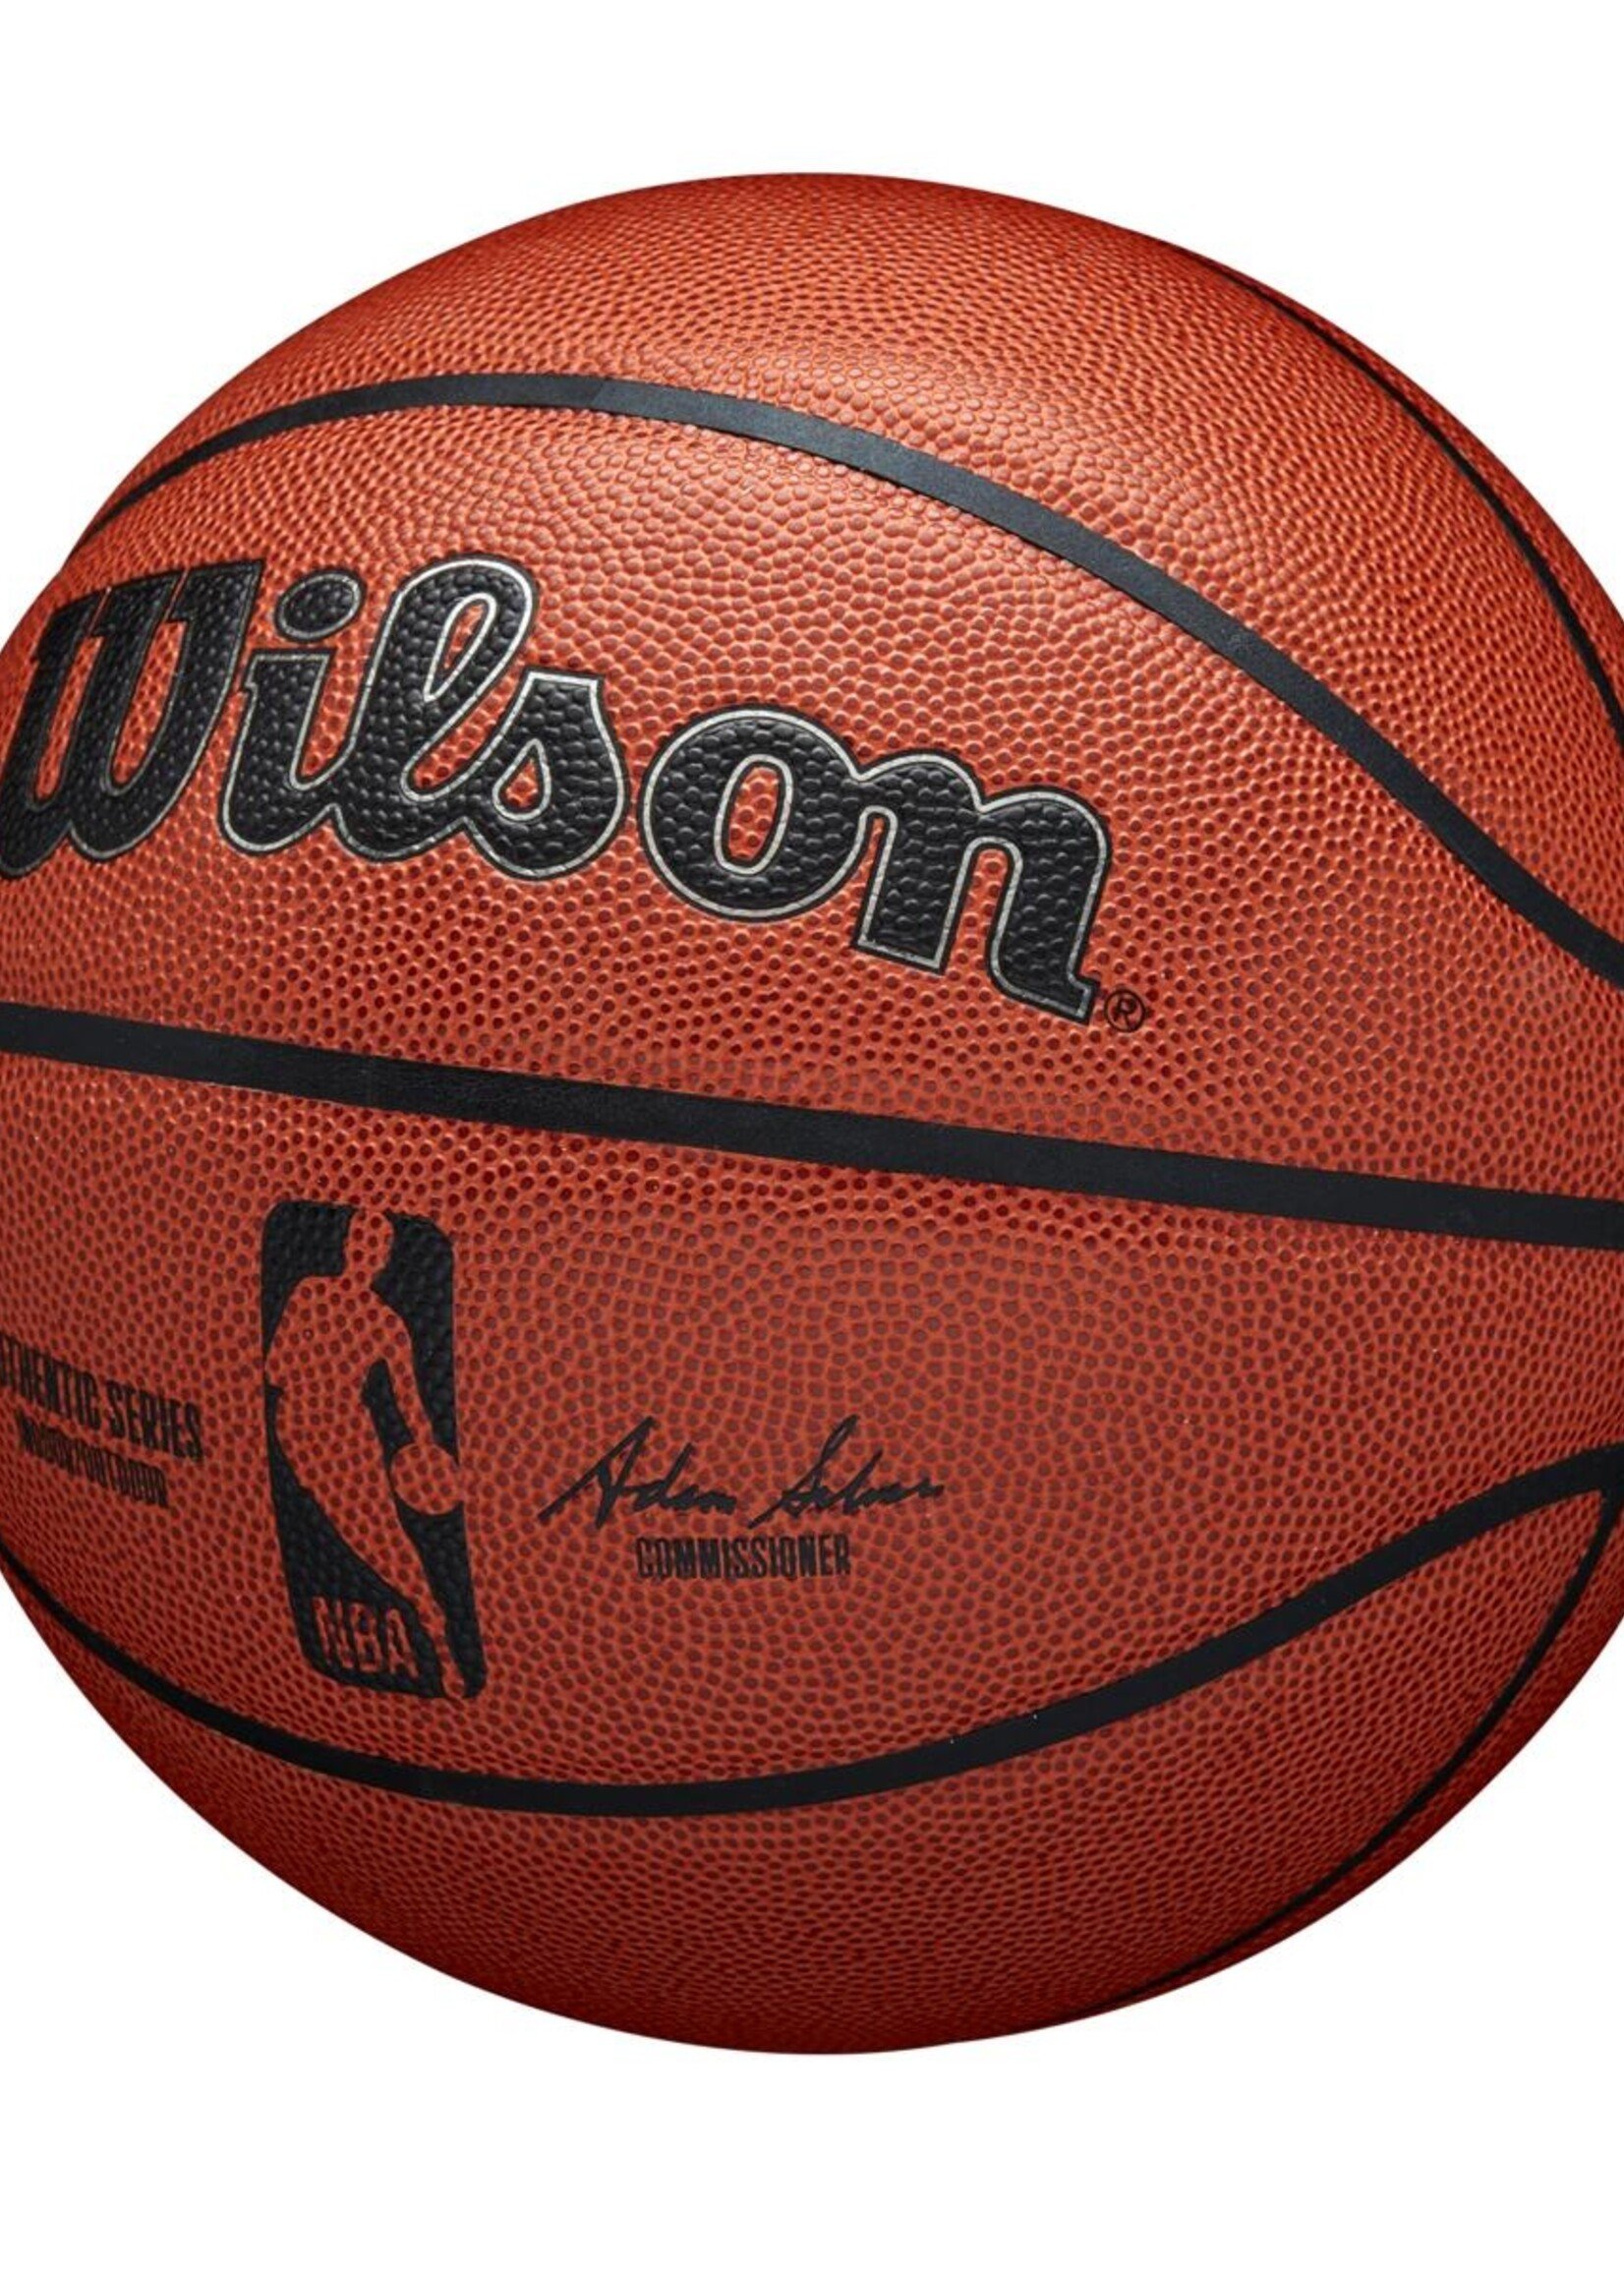 Wilson Wilson NBA Authentic Indoor Outdoor Basketbal (7)